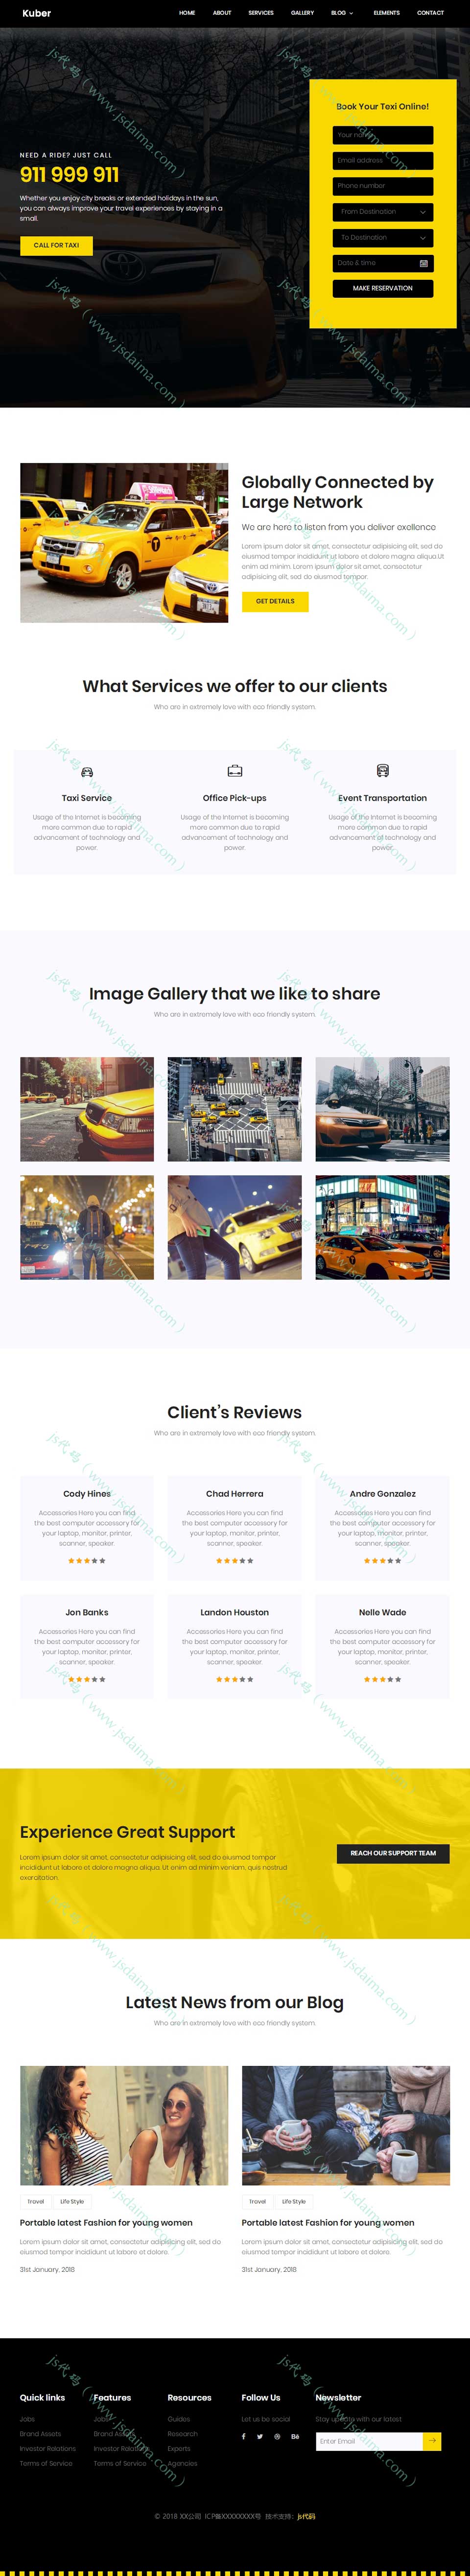 黄色响应式汽车租赁服务公司HTML5响应式网站模板